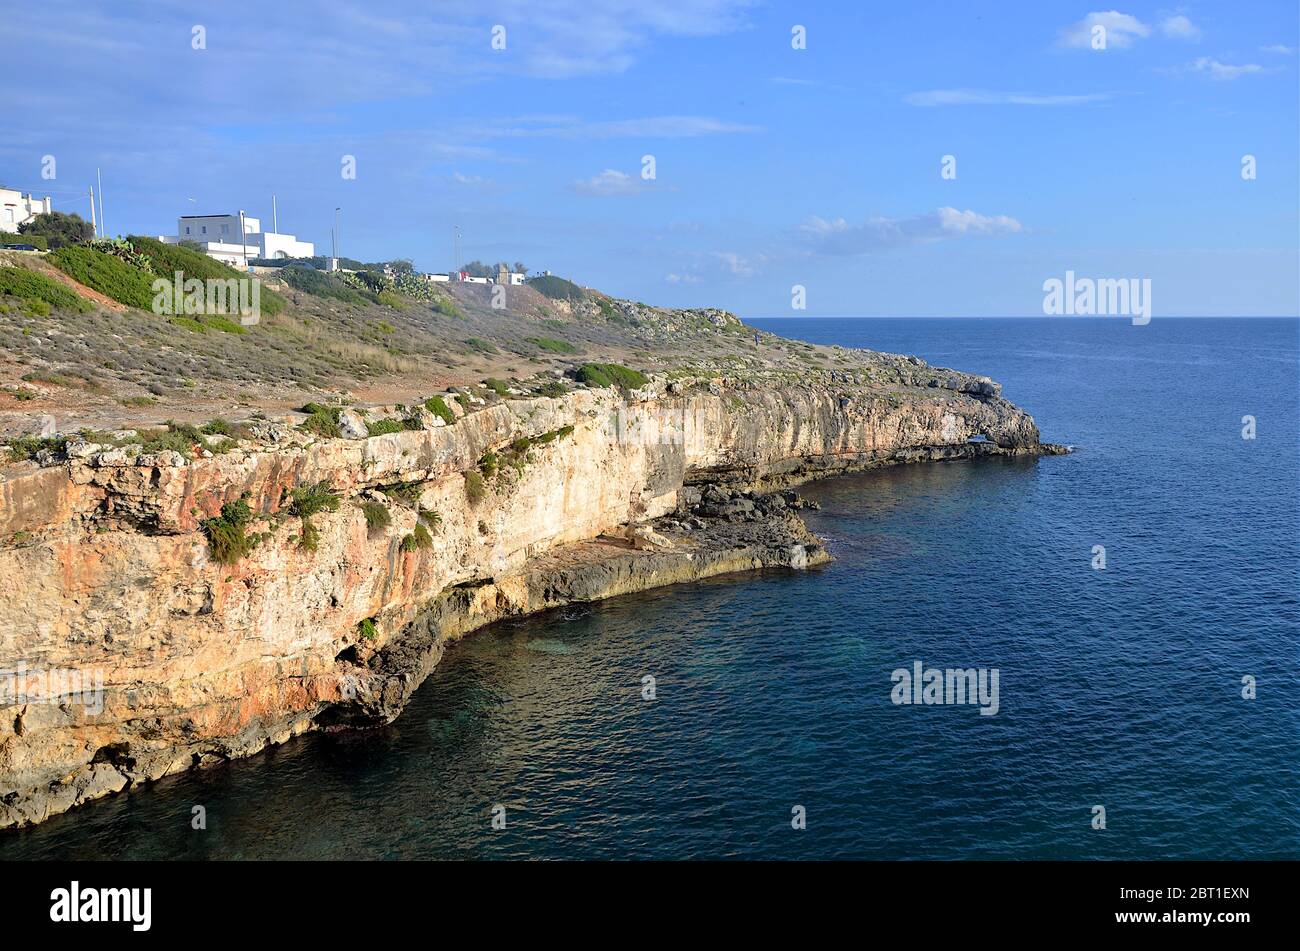 Vue panoramique sur une partie de la côte de Salento, Apulia, Italie du Sud Banque D'Images